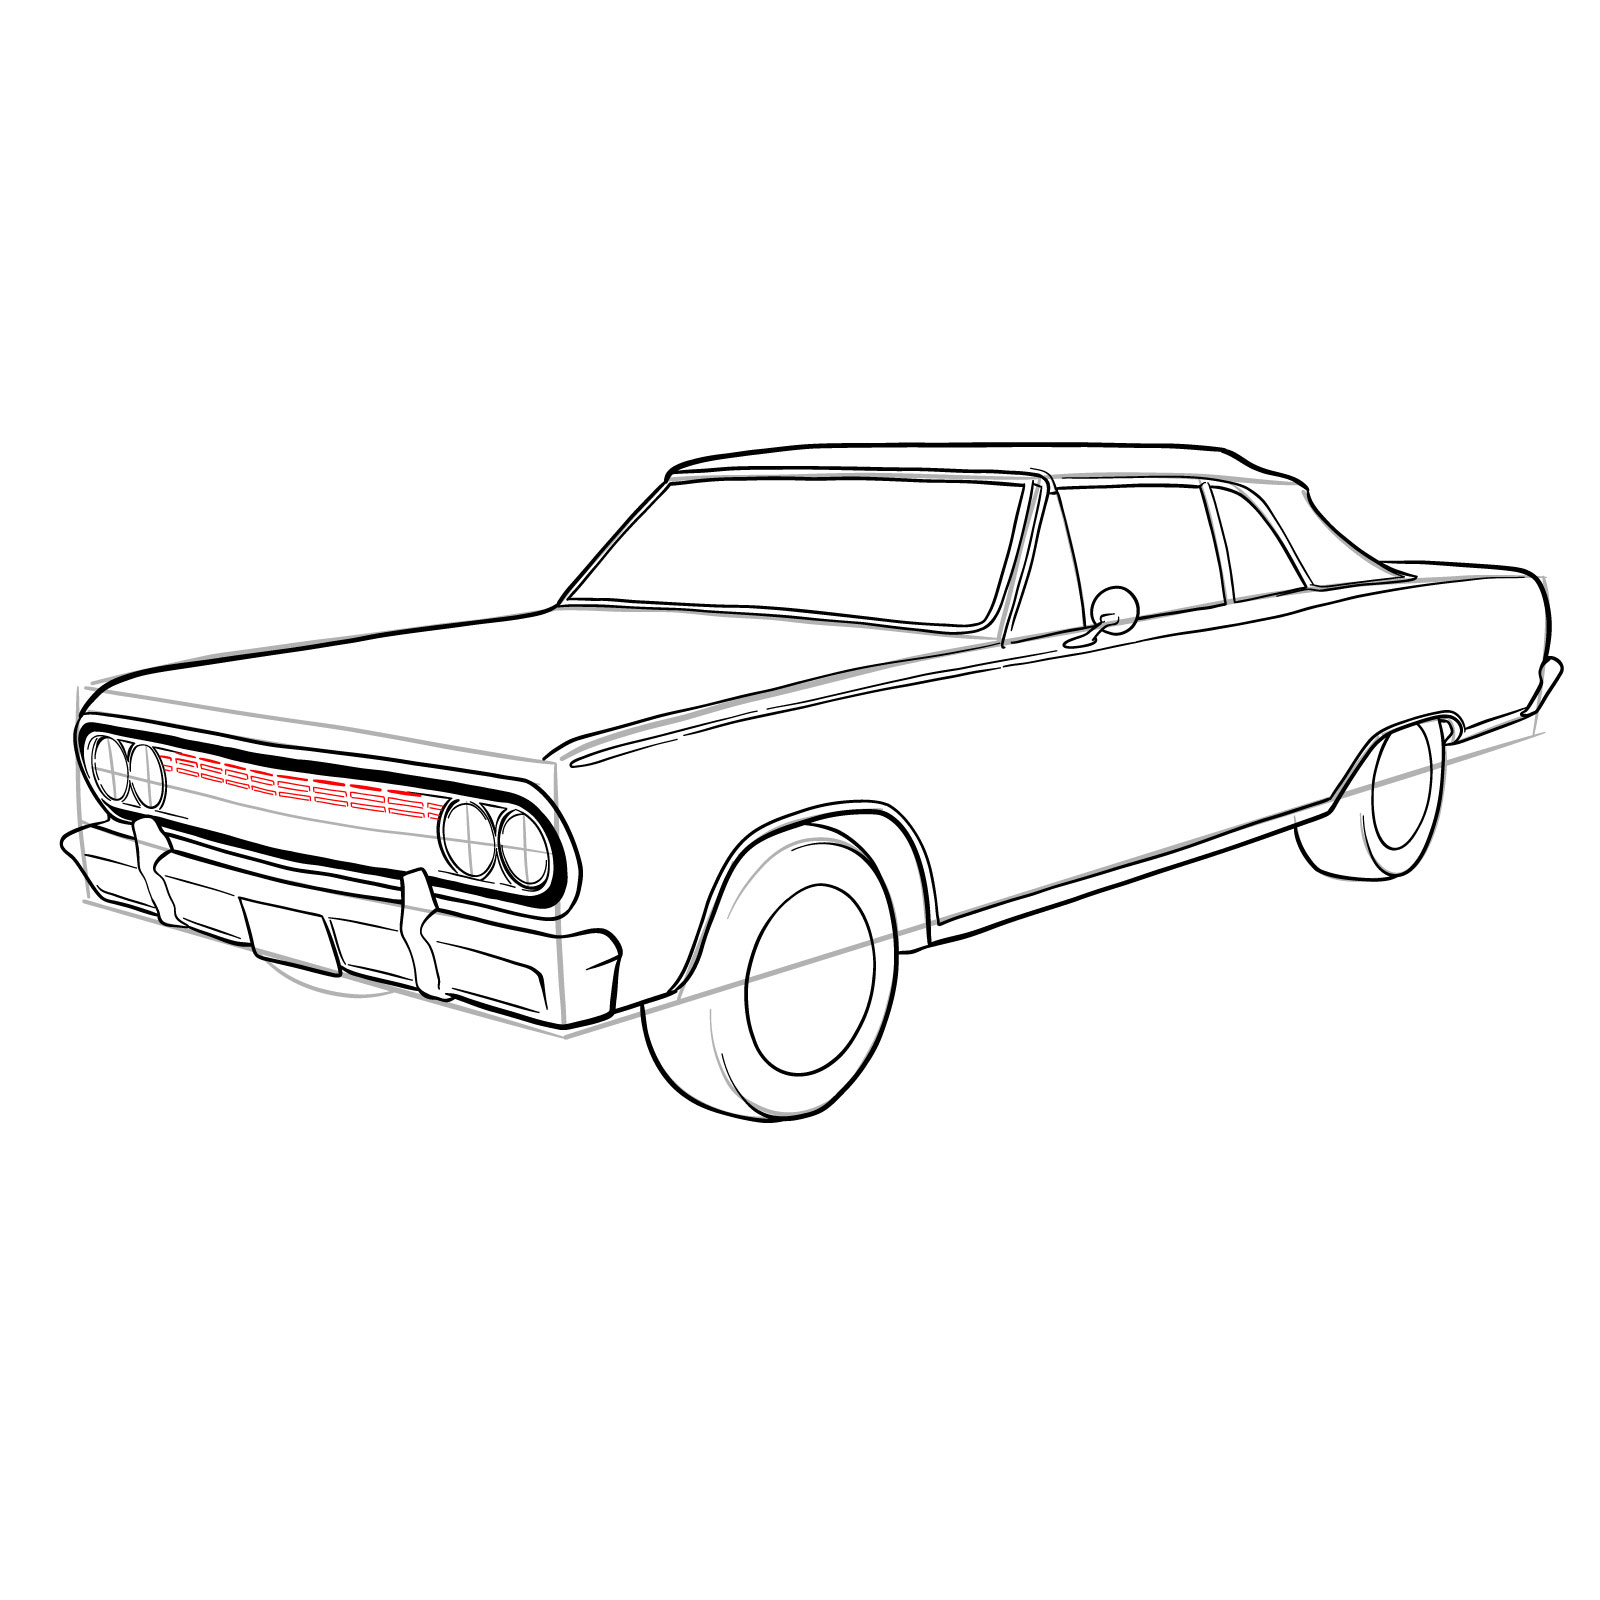 How to draw 1964 Chevrolet Malibu - step 32